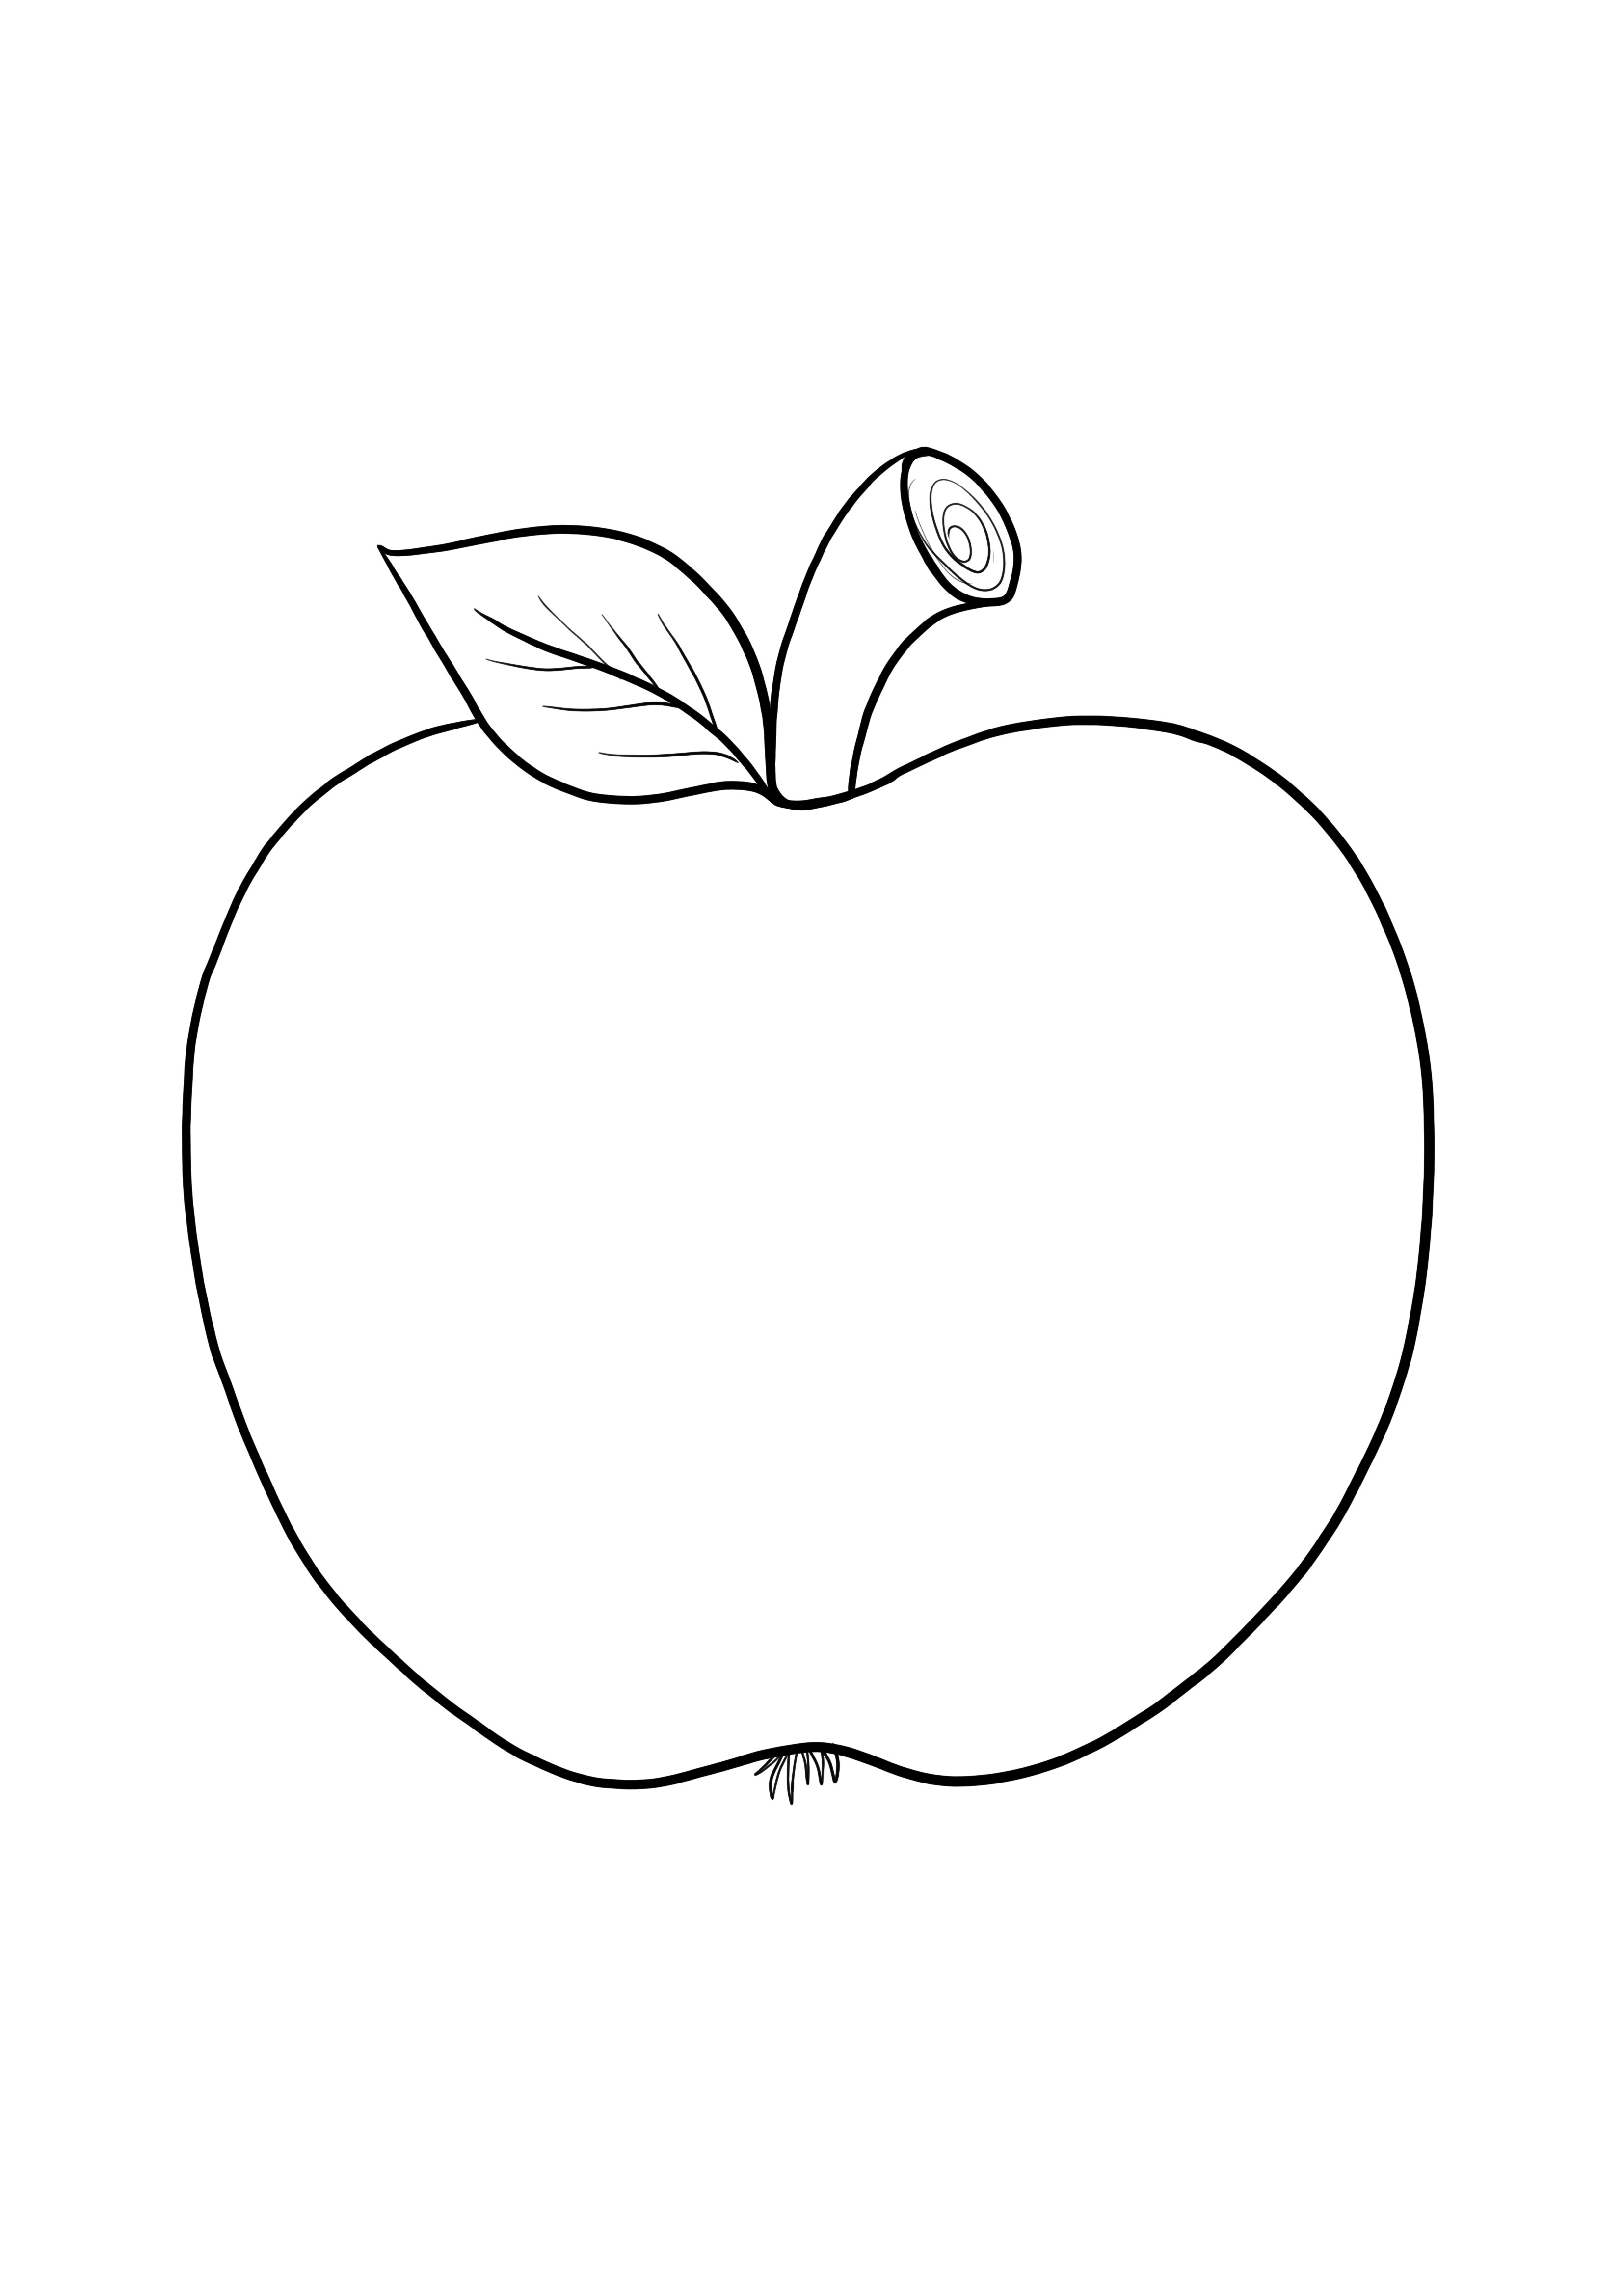 子供向けの簡単な着色のための単純な空白のリンゴの画像-無料で印刷できます